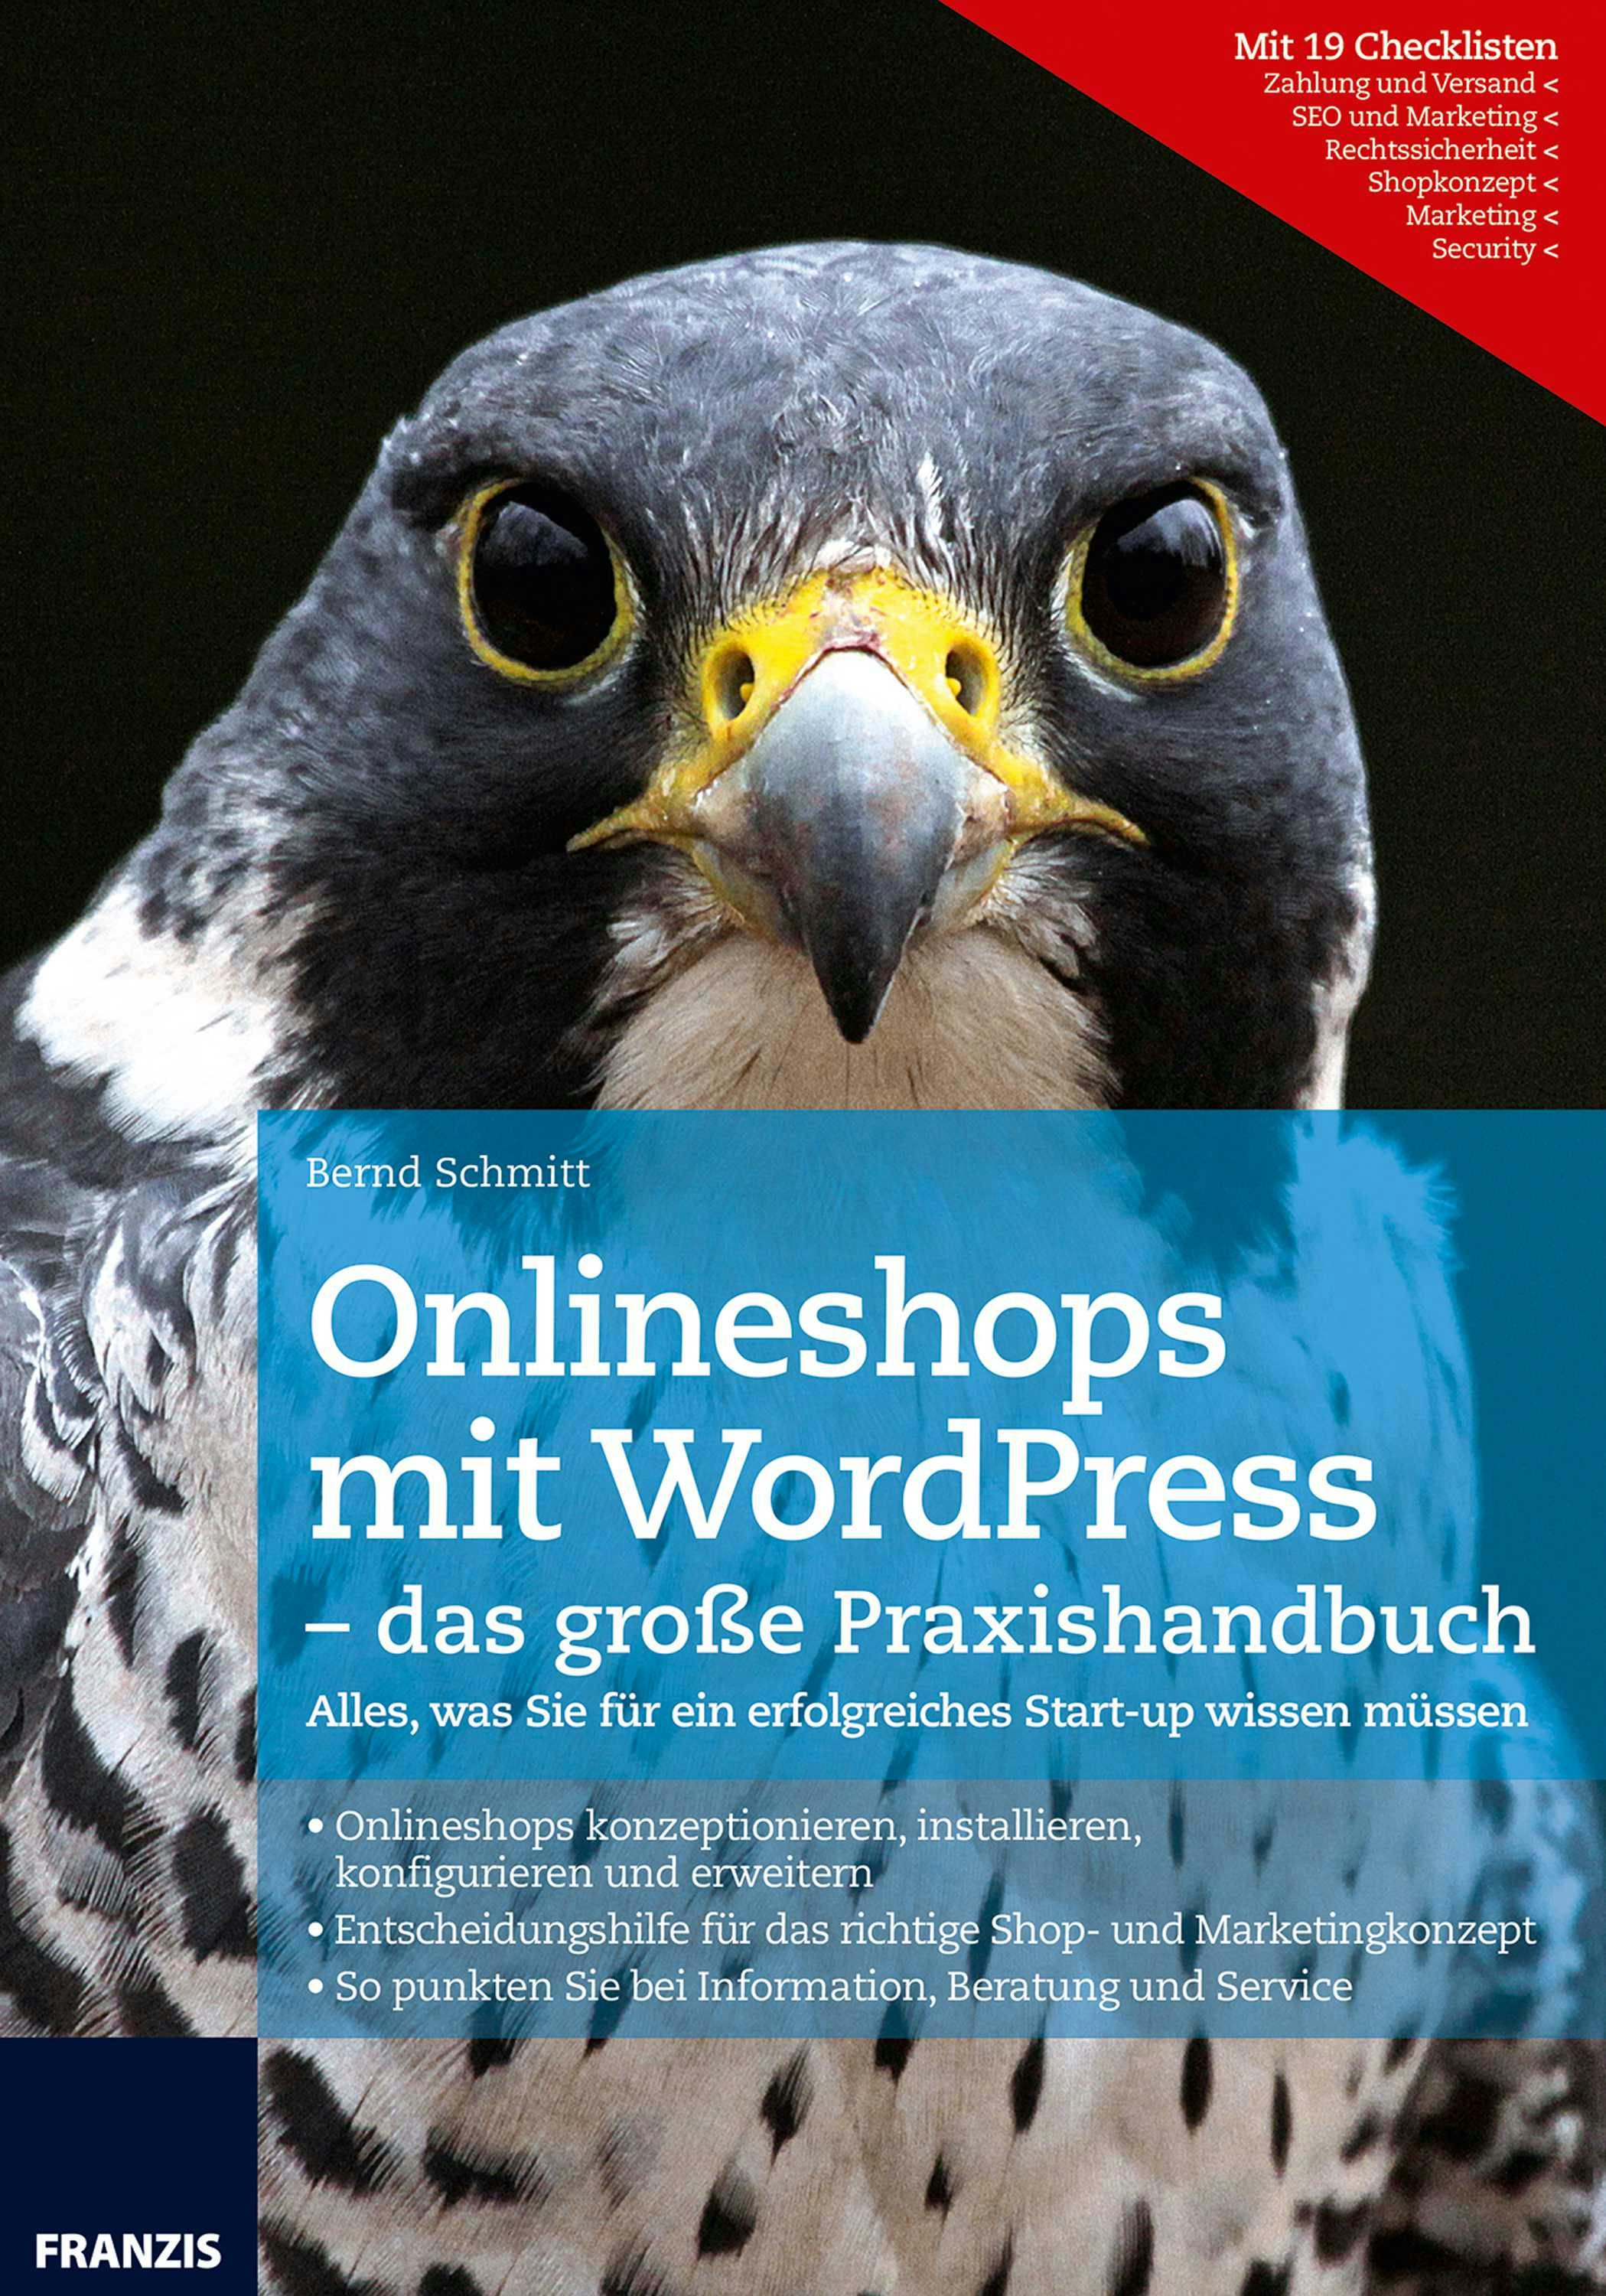 Onlineshops mit WordPress - das große Praxishandbuch: Alles, was Sie für ein erfolgreiches Start-up wissen müssen - Bernd Schmitt